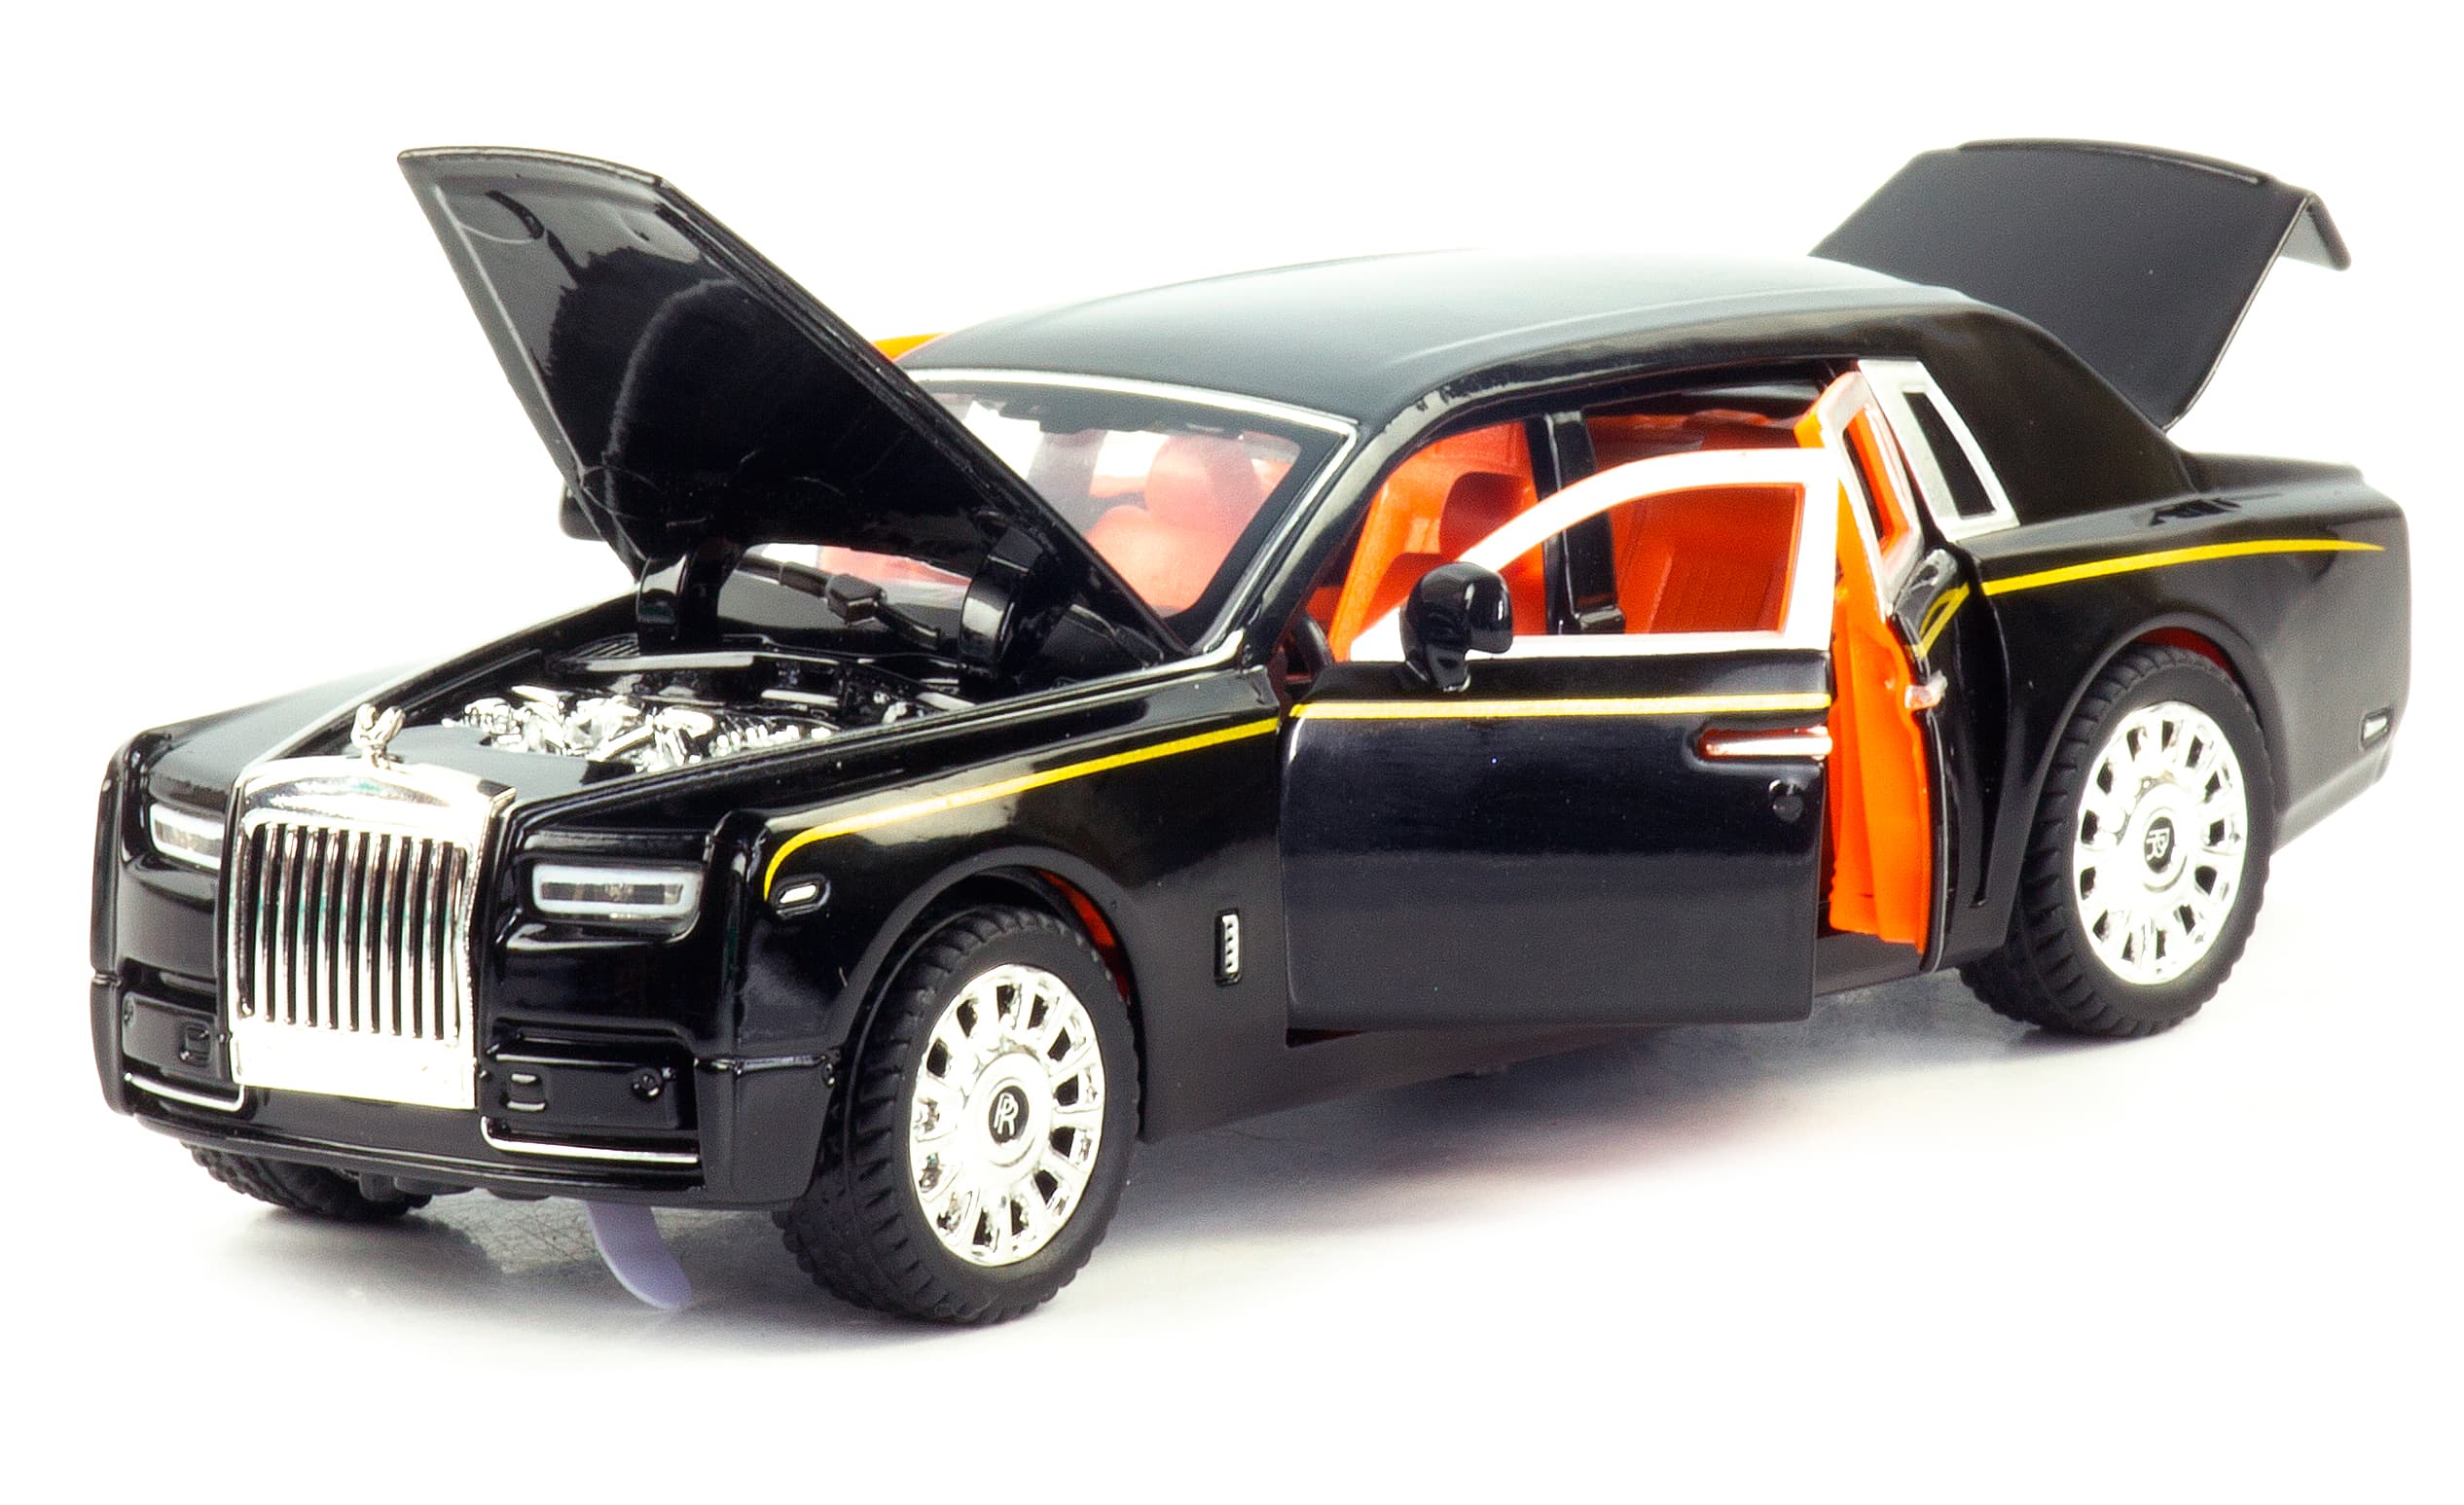 Металлическая машинка 1:32 «Rolls-Royce Phantom» М923B инерционная, свет, звук / Микс